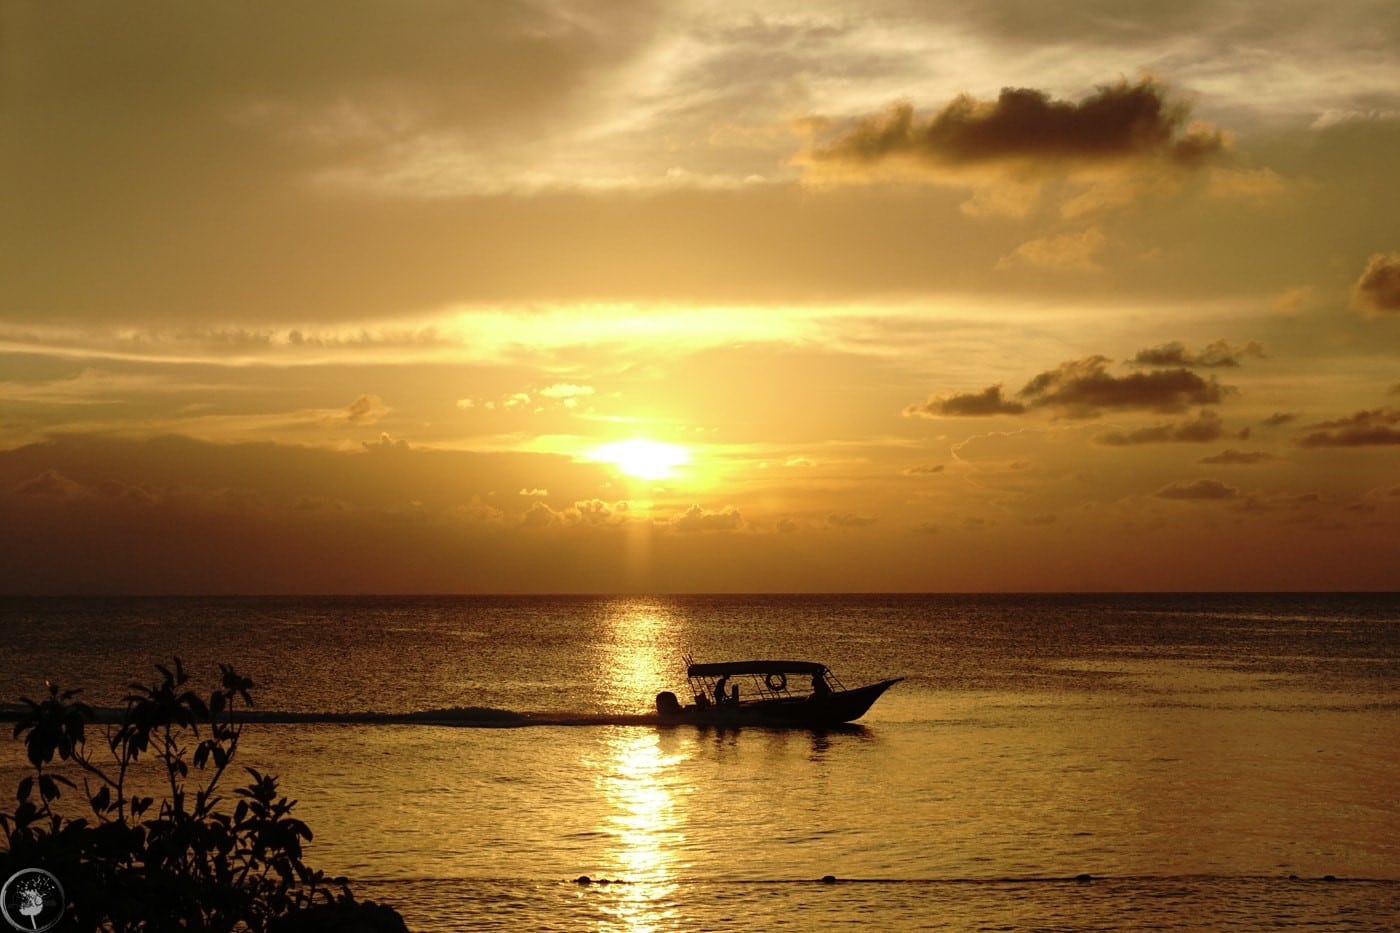 sunset view at pulau redang